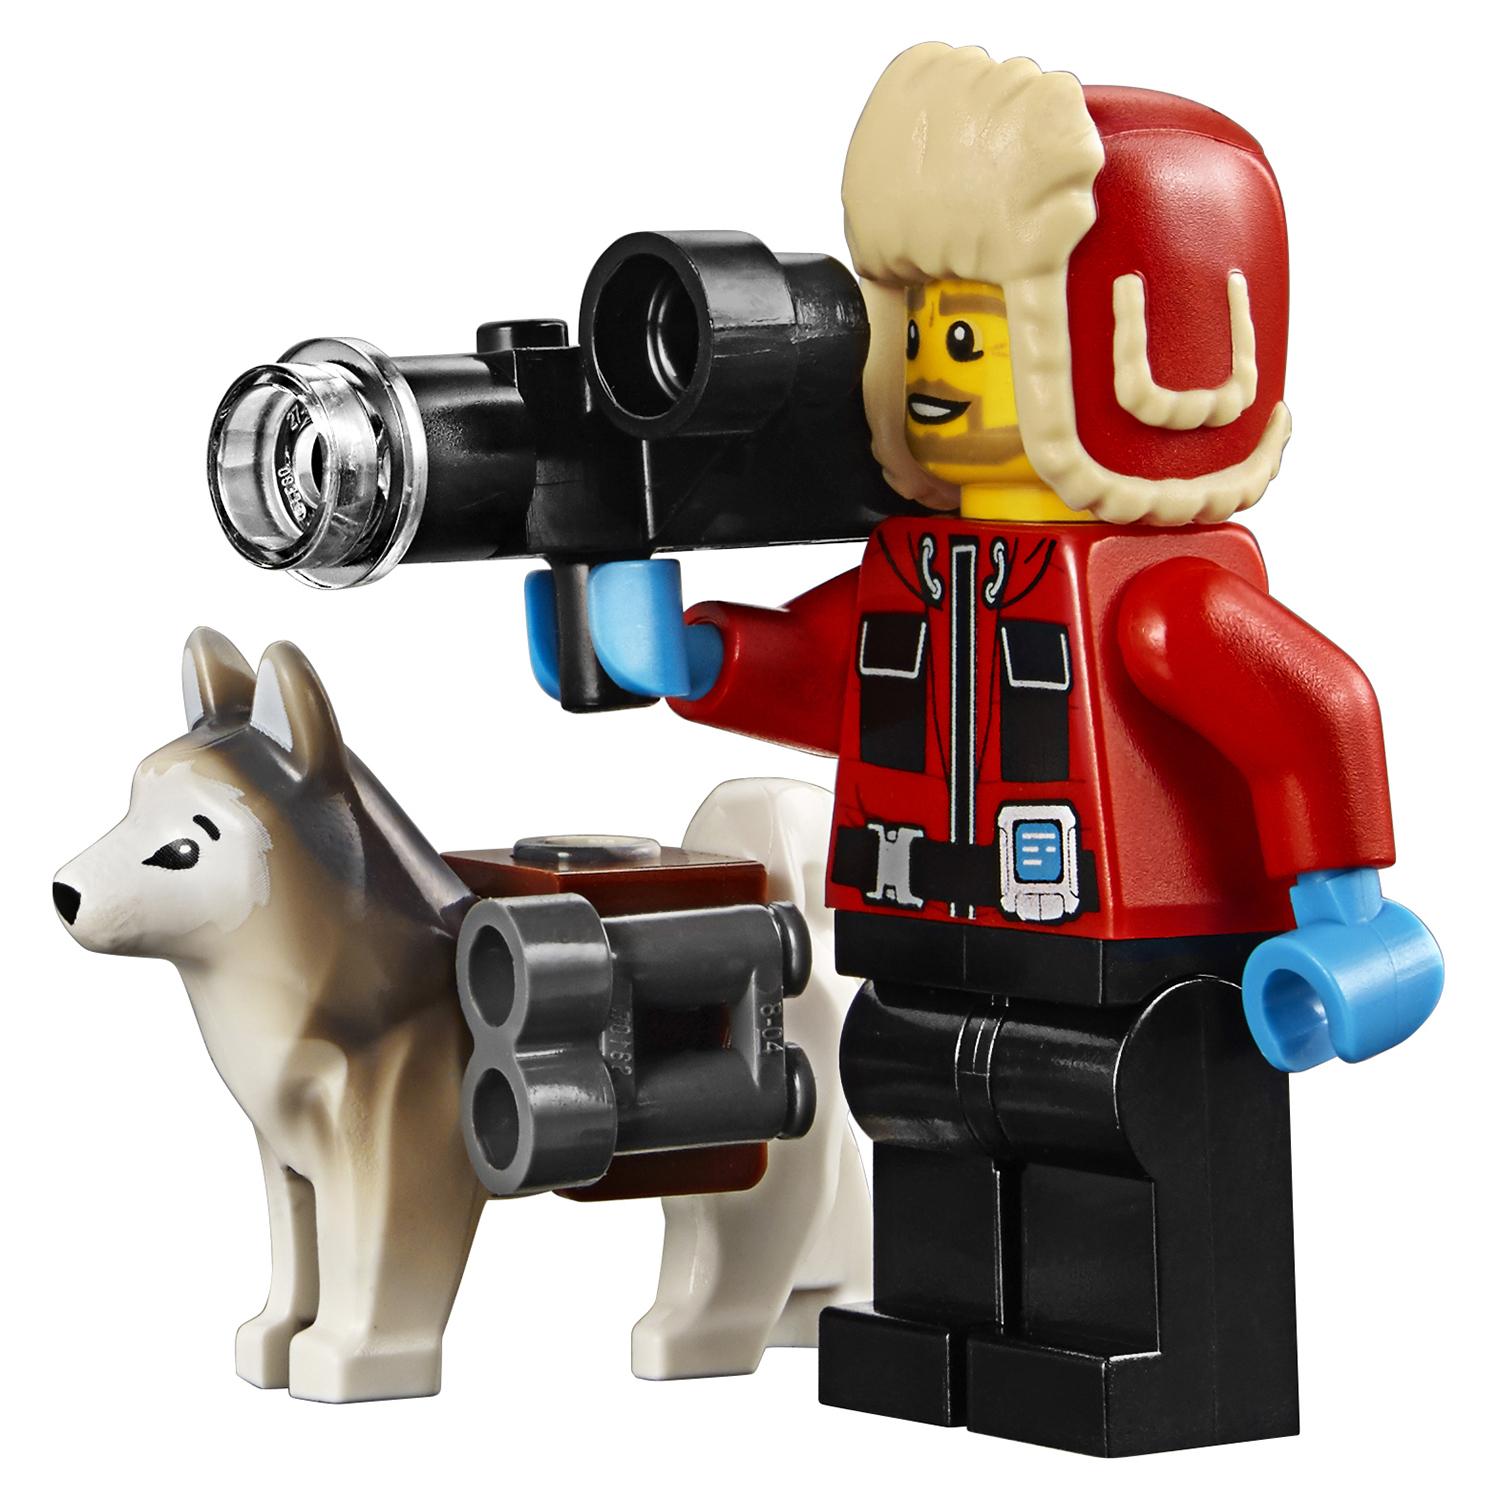 Конструктор Lego City - Грузовик ледовой разведки  